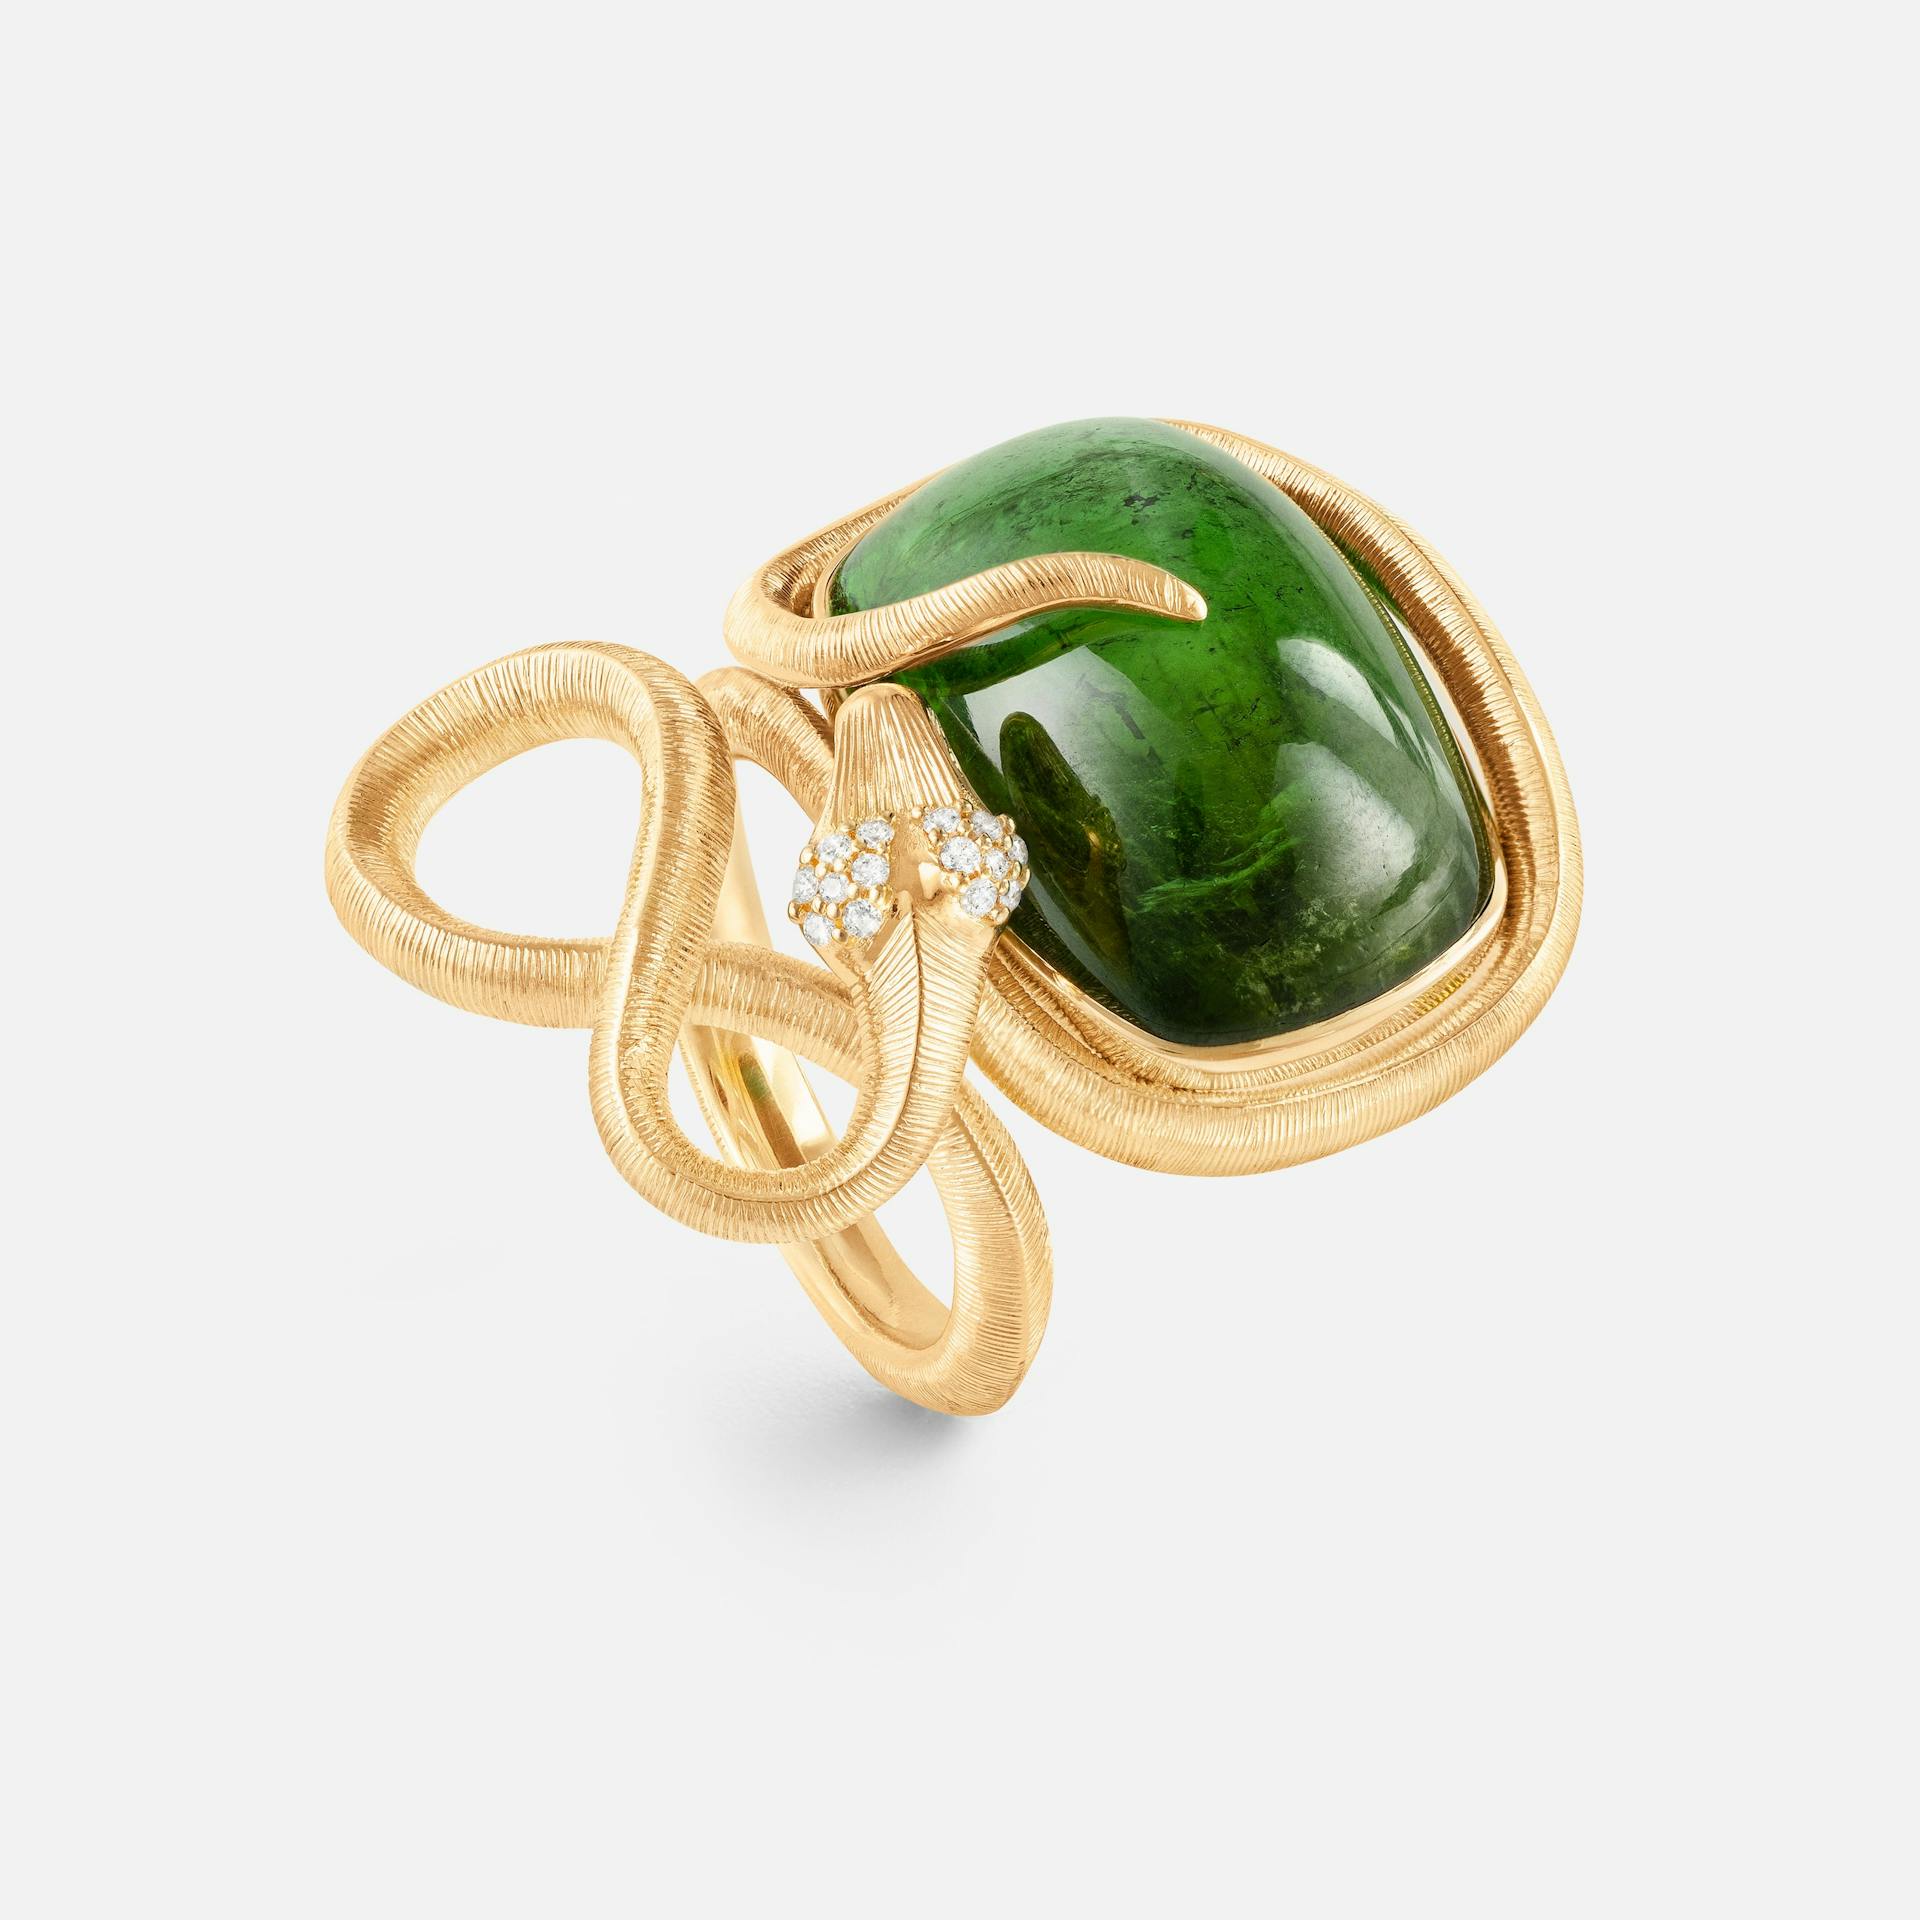 Gipsy earrings SP Snakes Ring YG w.green tourmaline 22x16 18k guld med grøn turmalin og diamanter 0,08 ct. TW.VS
